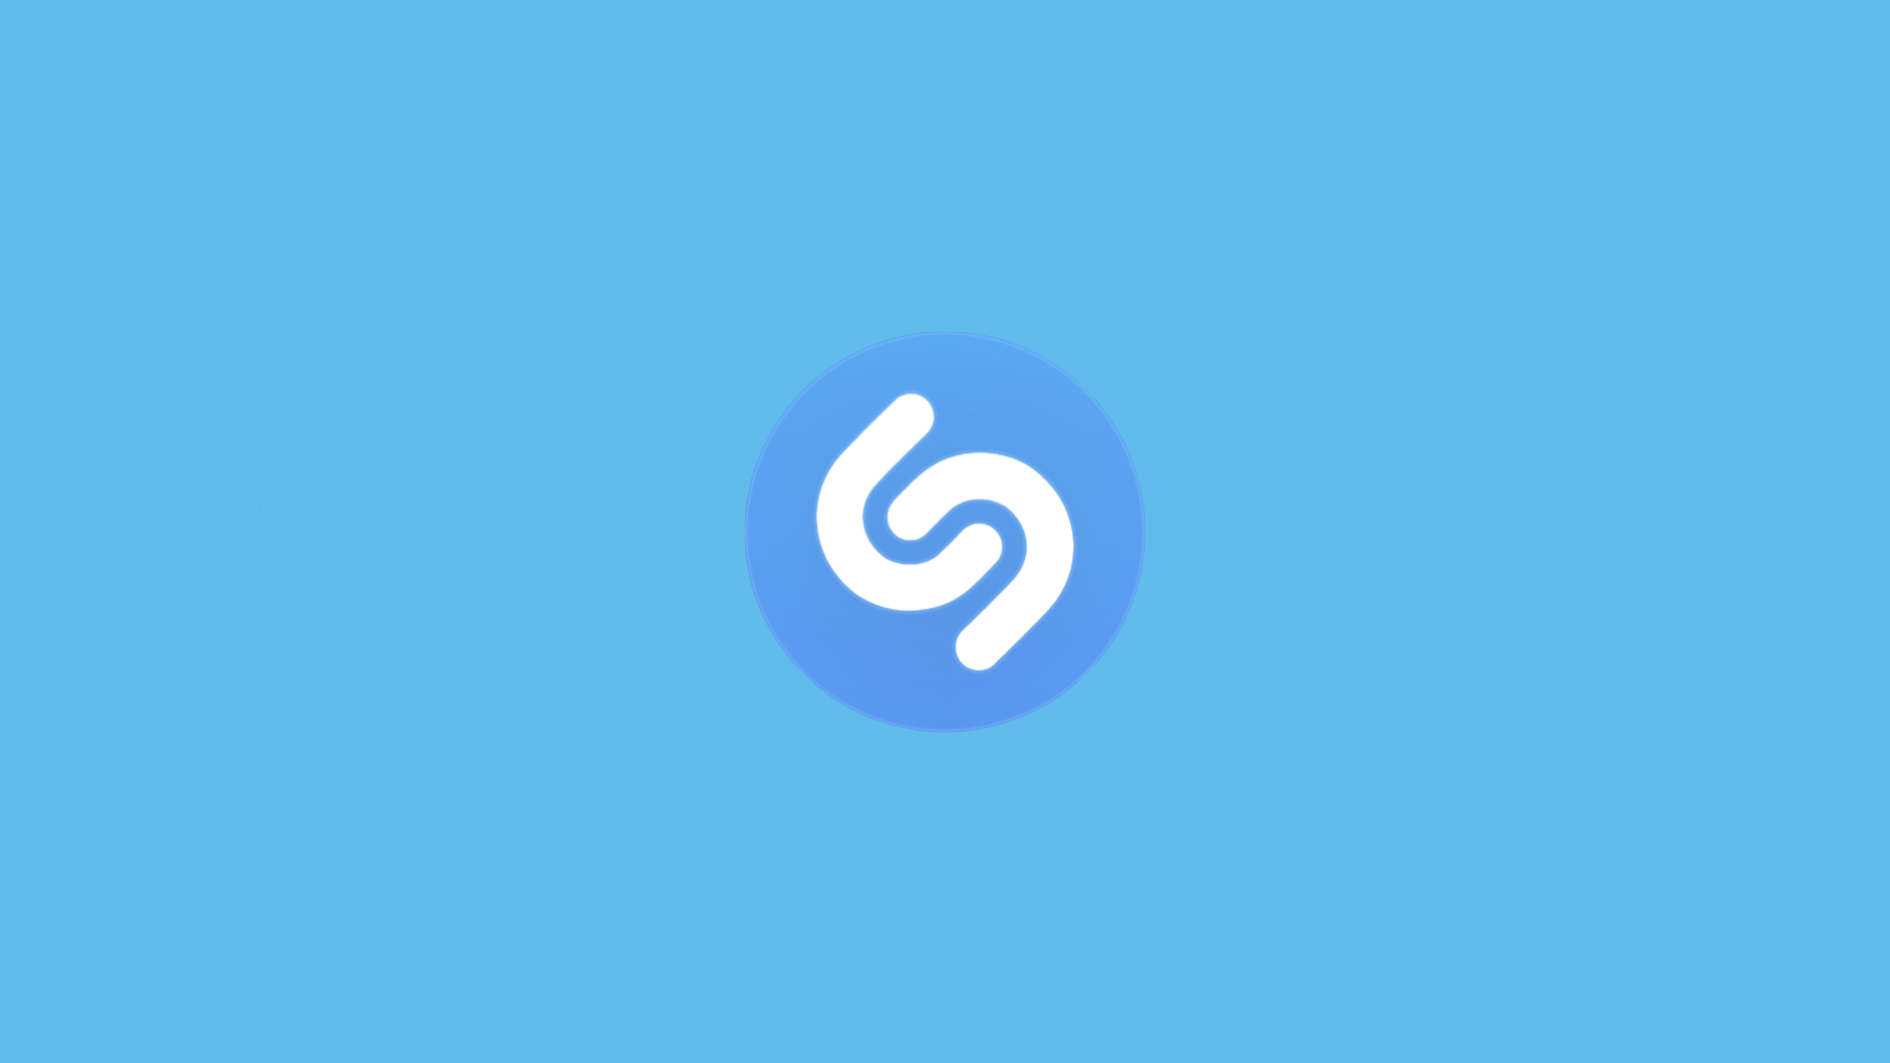 متجر التطبيقات 15 يناير 2021 يتوقع موقع Shazam الموسيقى الأكثر شعبية لعام 2021